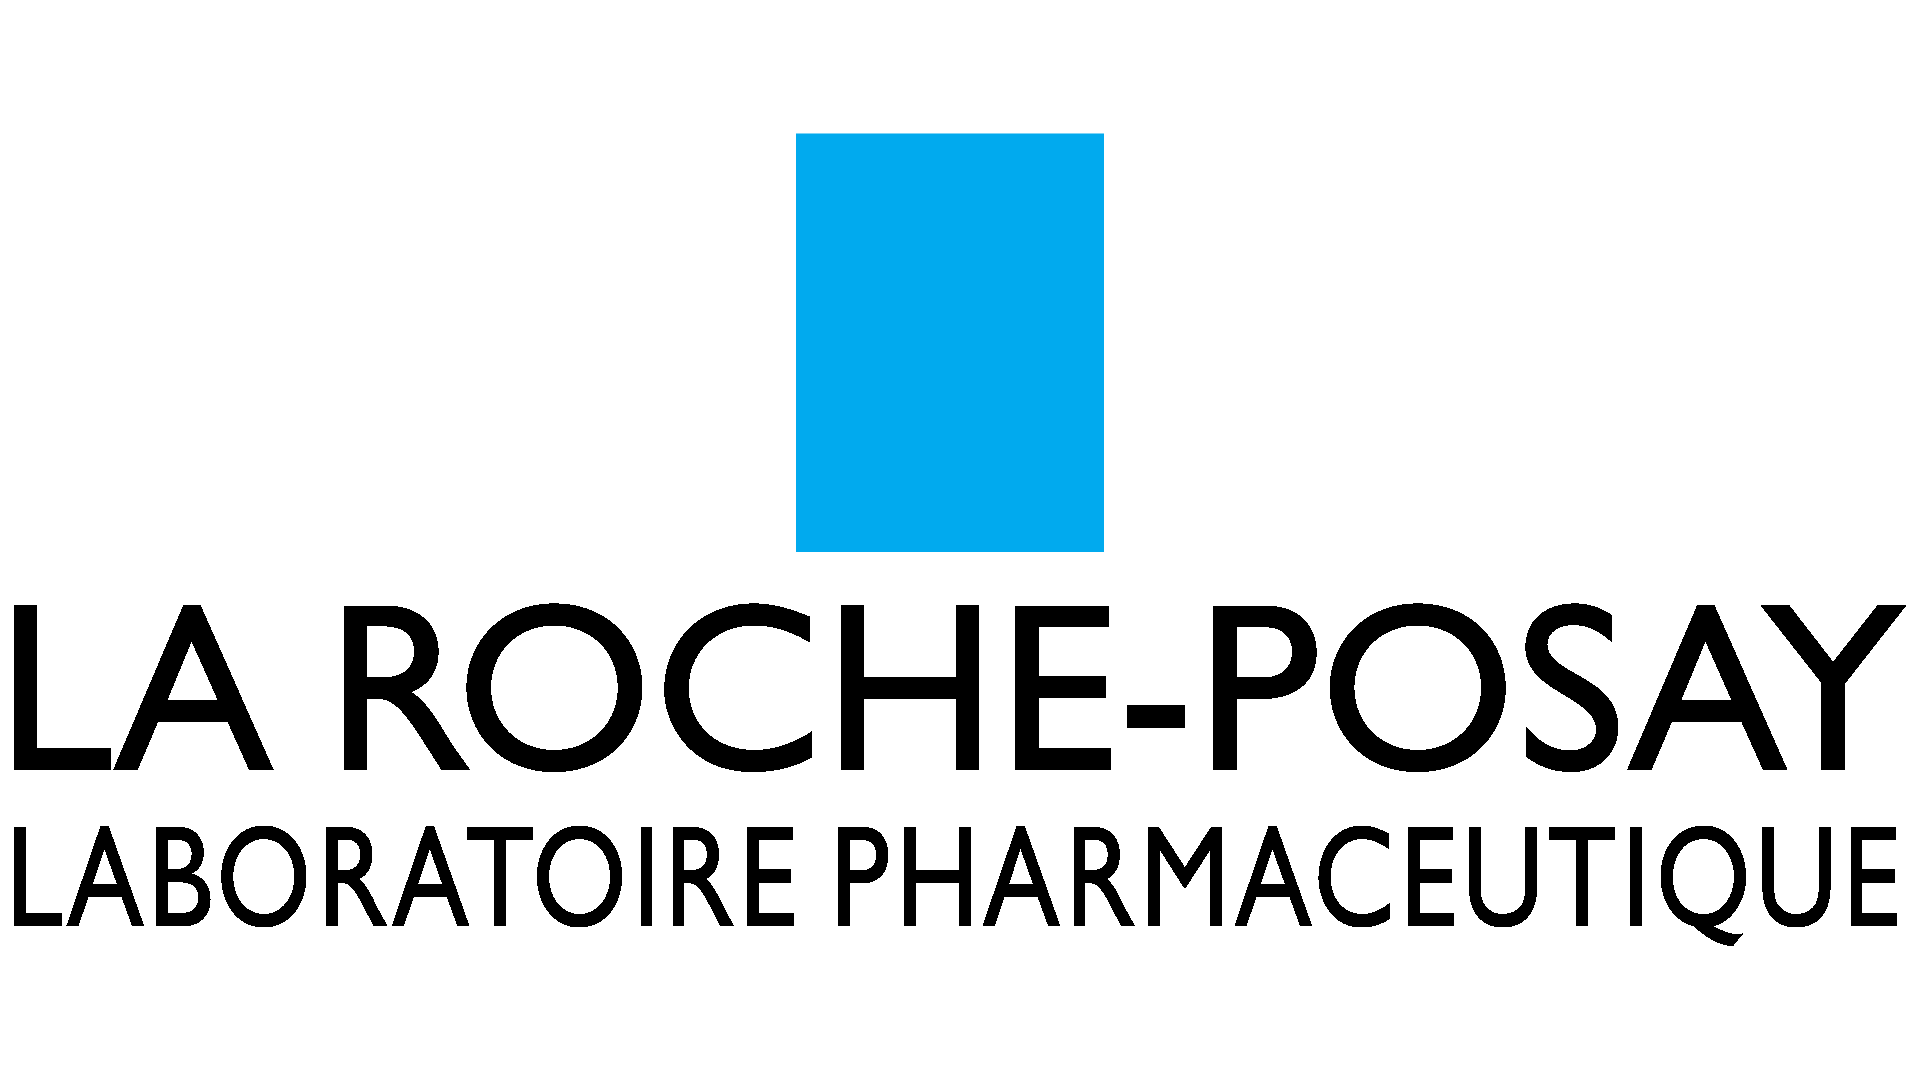 العلامة التجارية: La Roche-posay